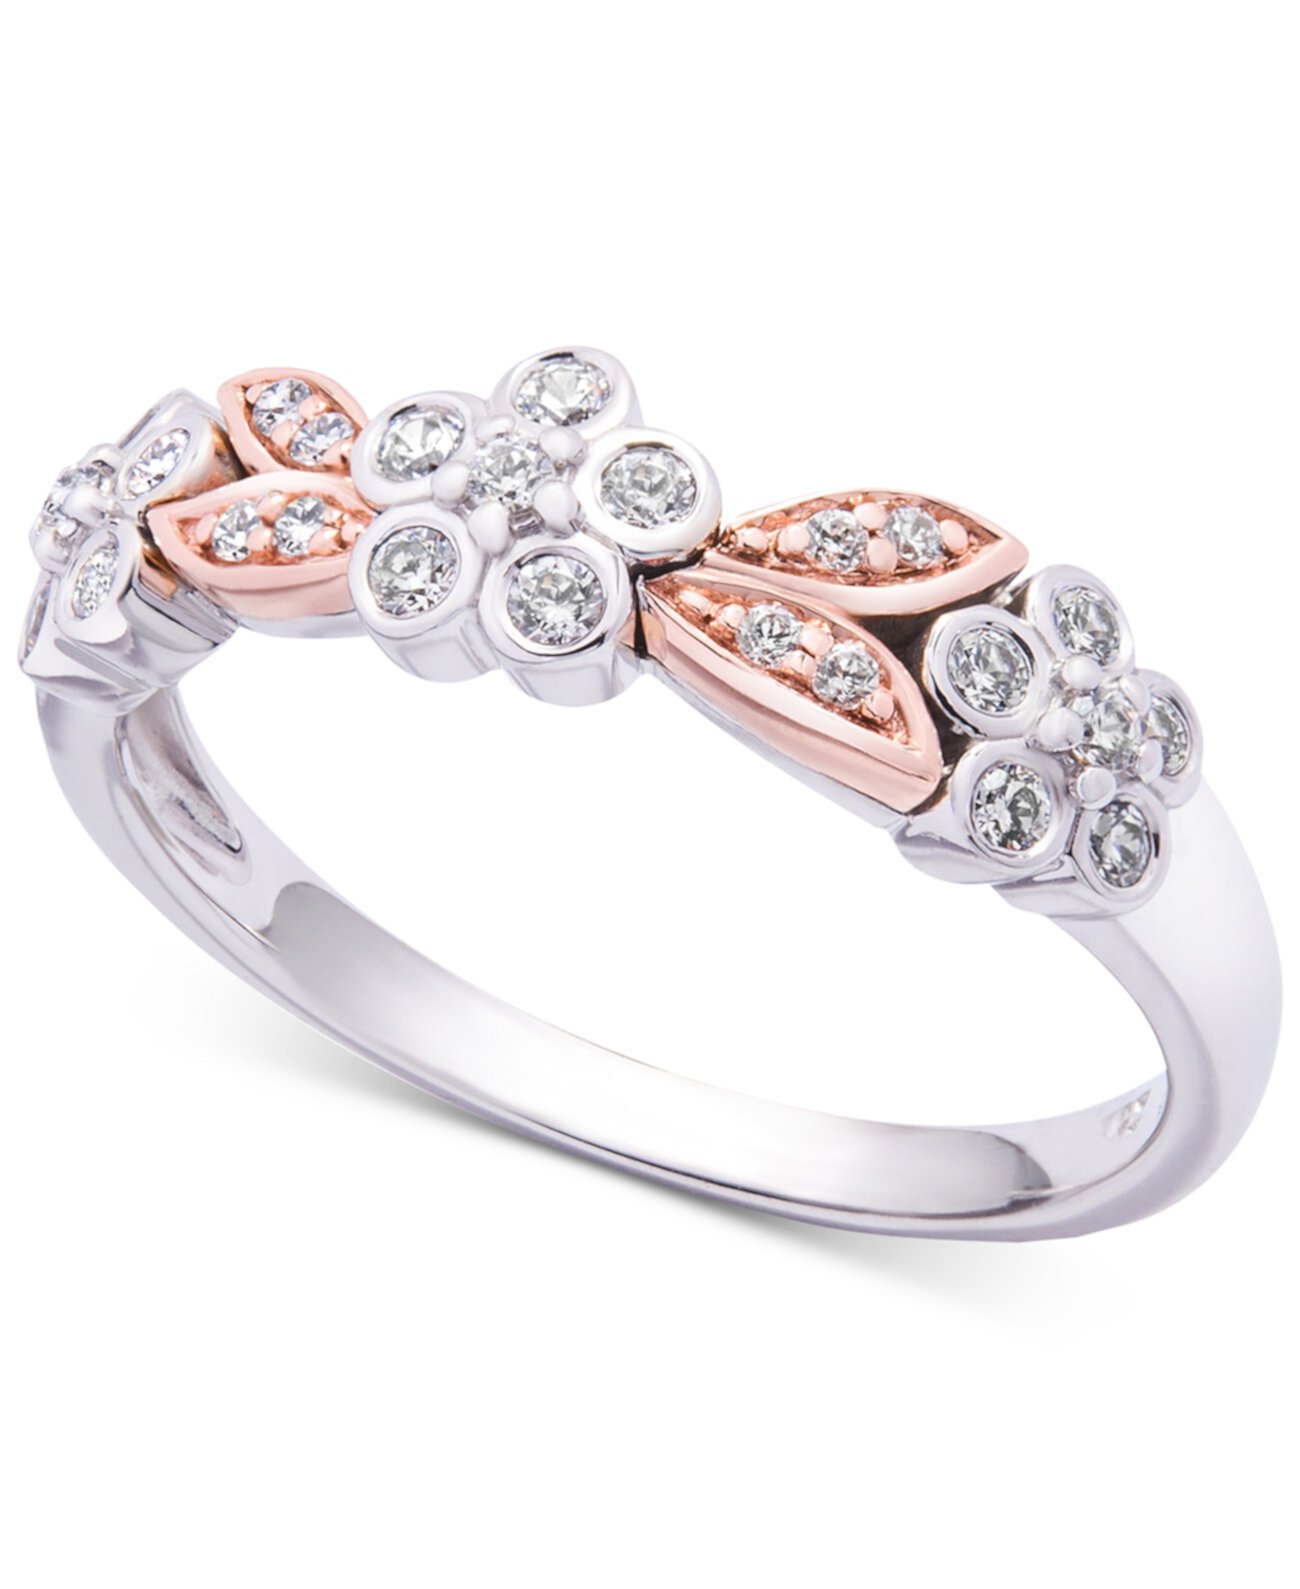 Кольцо с двухцветным цветком и бриллиантом (1/4 карата) из белого и розового золота 585 пробы, создано для Macy's Wrapped in Love